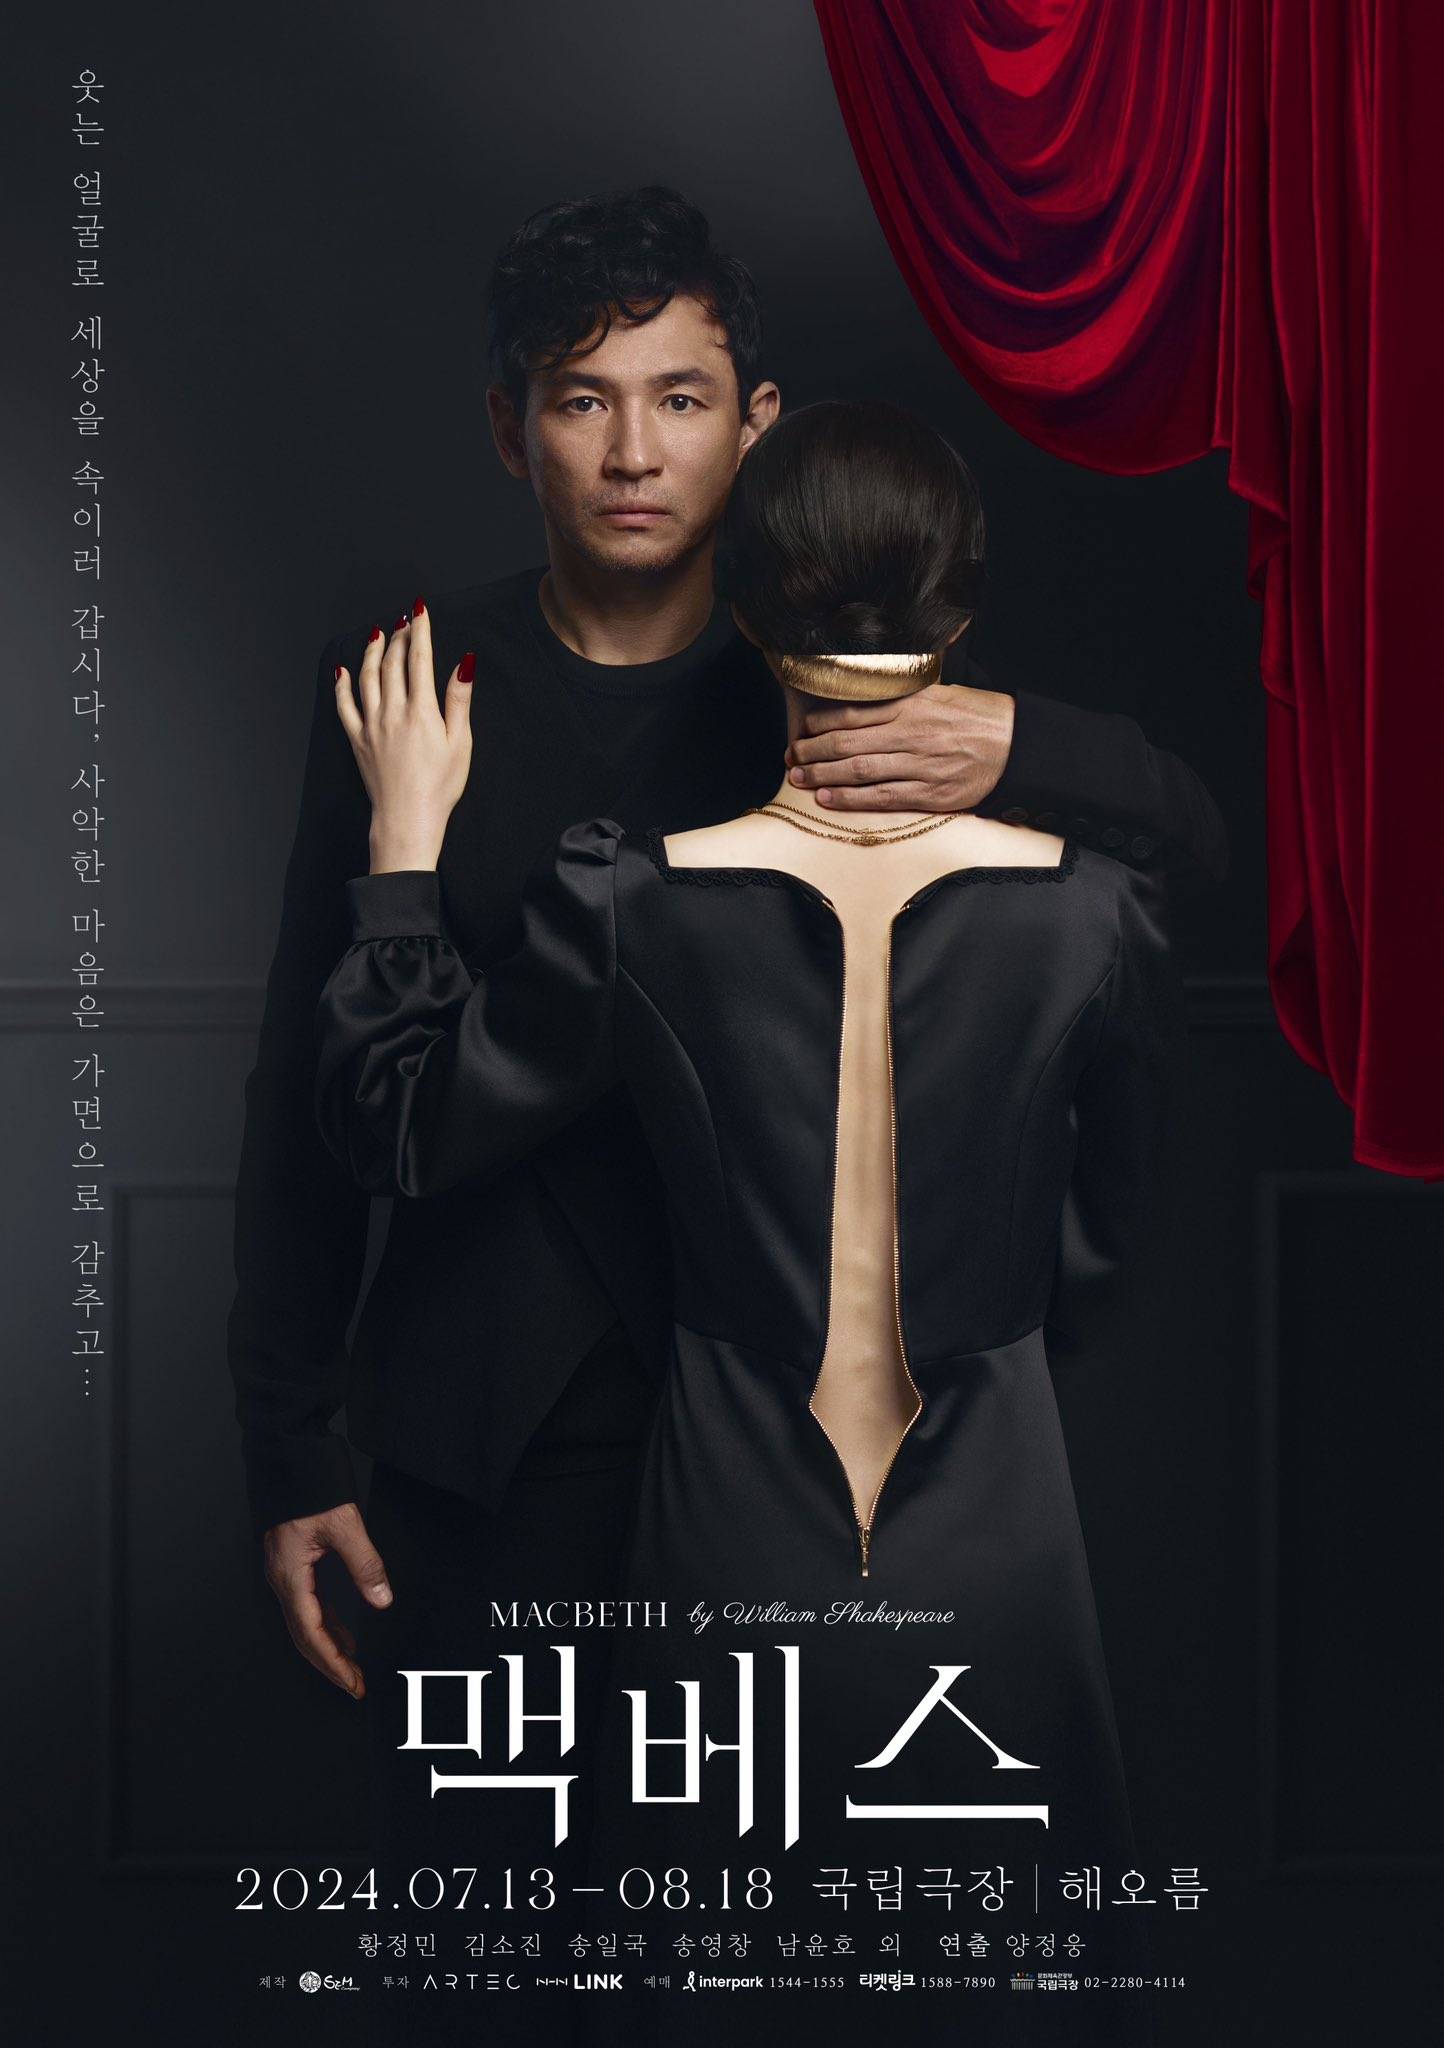 천재 디자이너라고 불리는 요시다 유니가 디자인한 한국 연극 포스터.jpg | 인스티즈